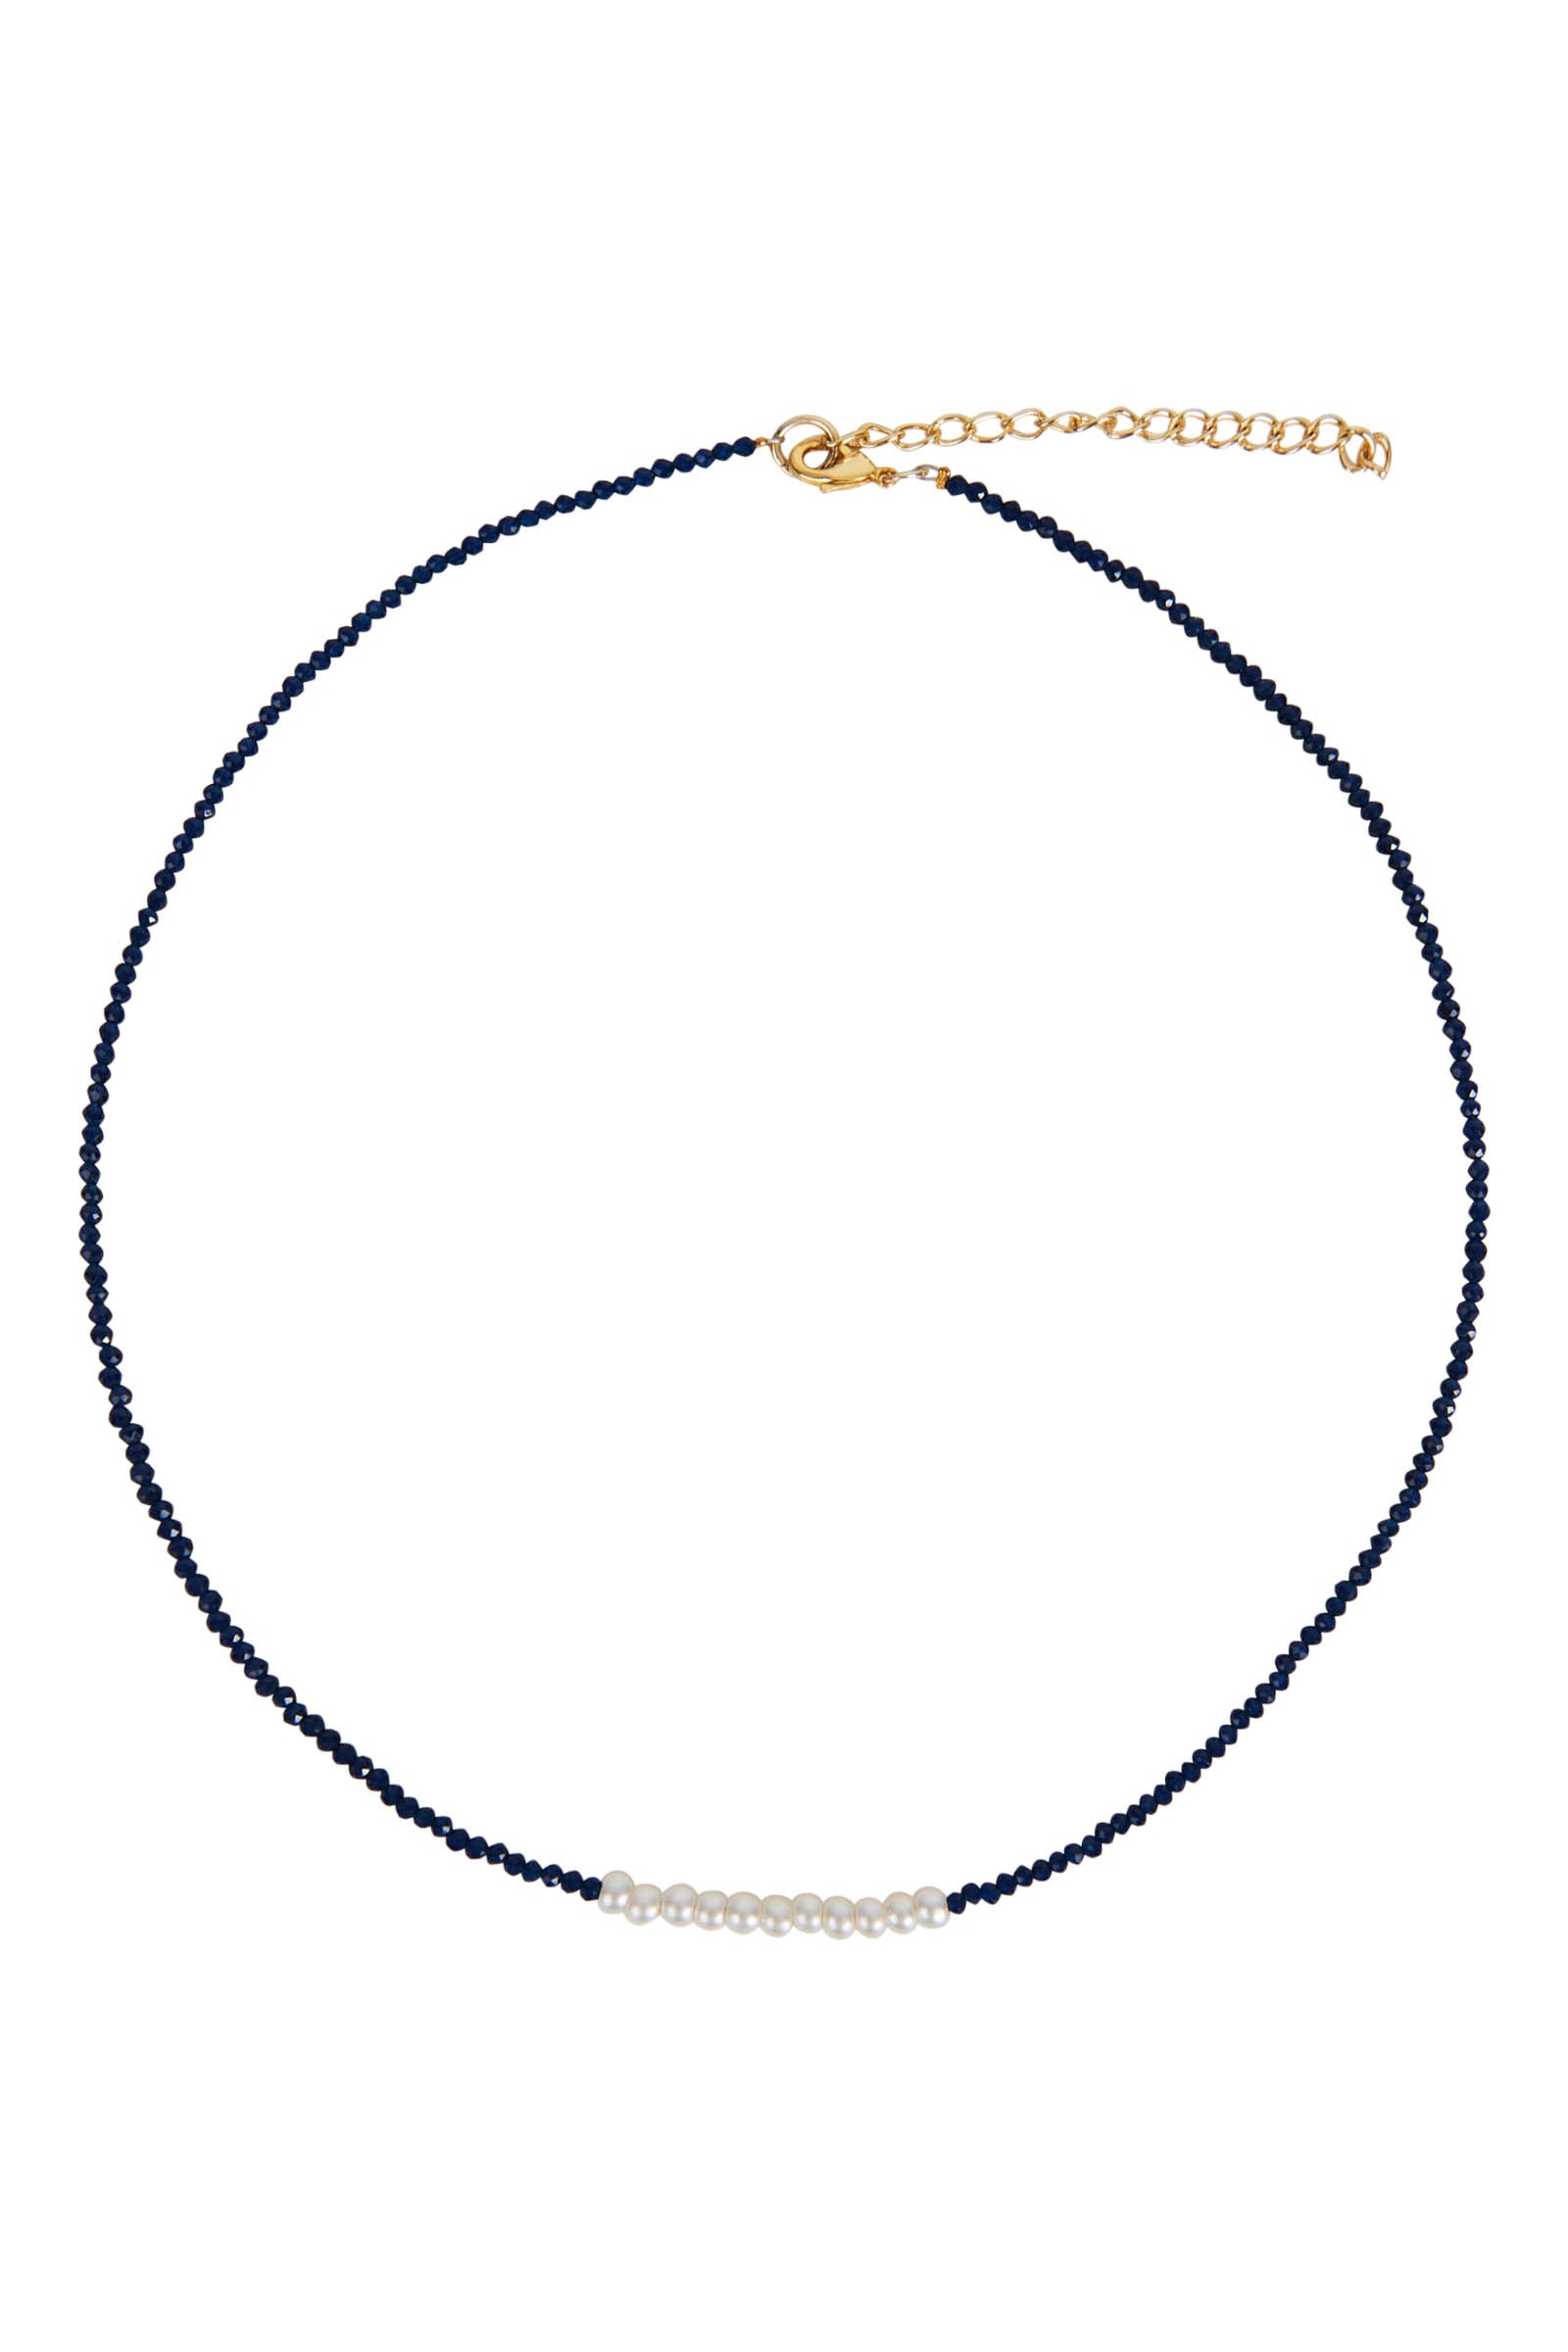 Vivid Necklace - Sapphire - eb&ive Necklace